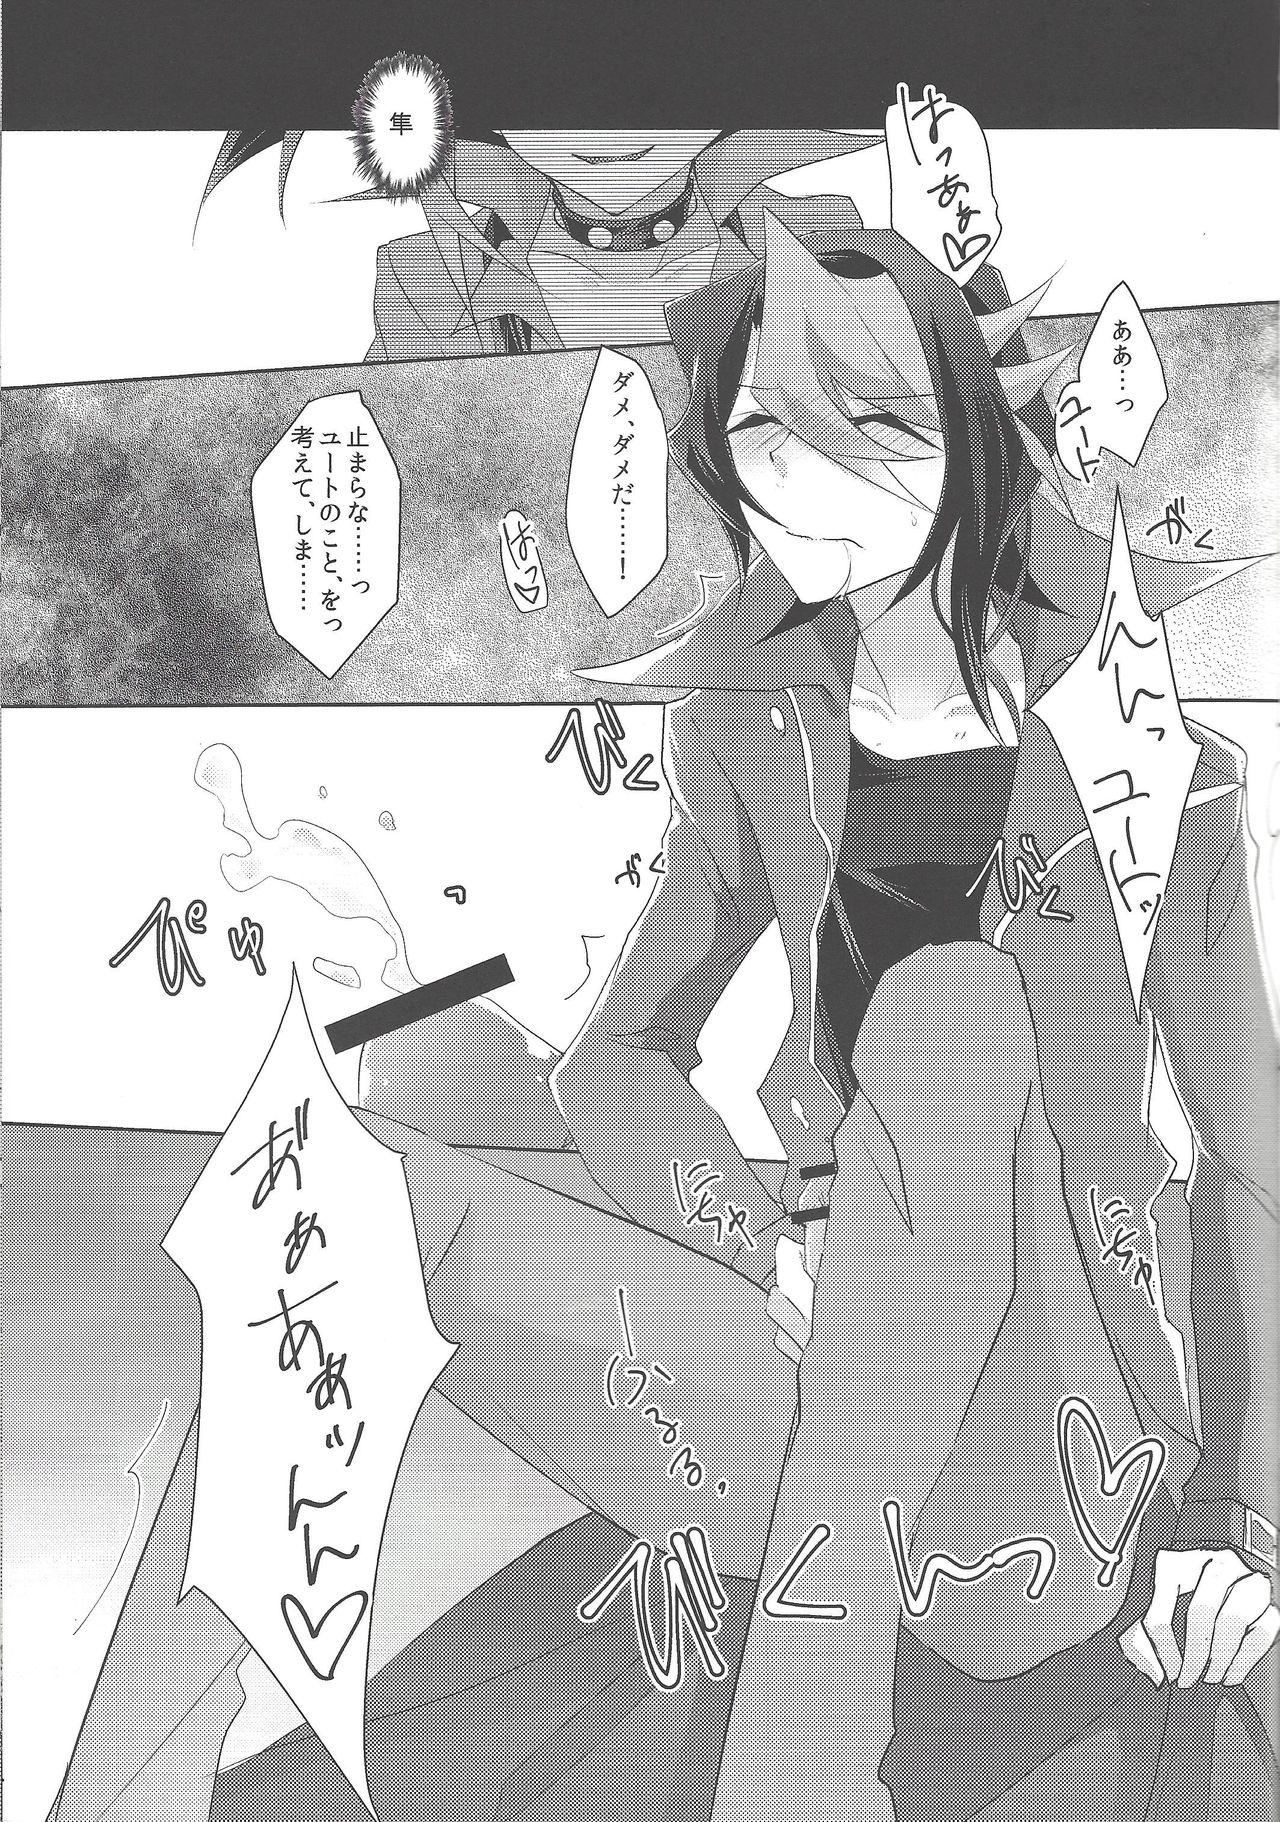 Uncensored Kimi to kokoro no risōkyō - Yu-gi-oh arc-v POV - Page 12